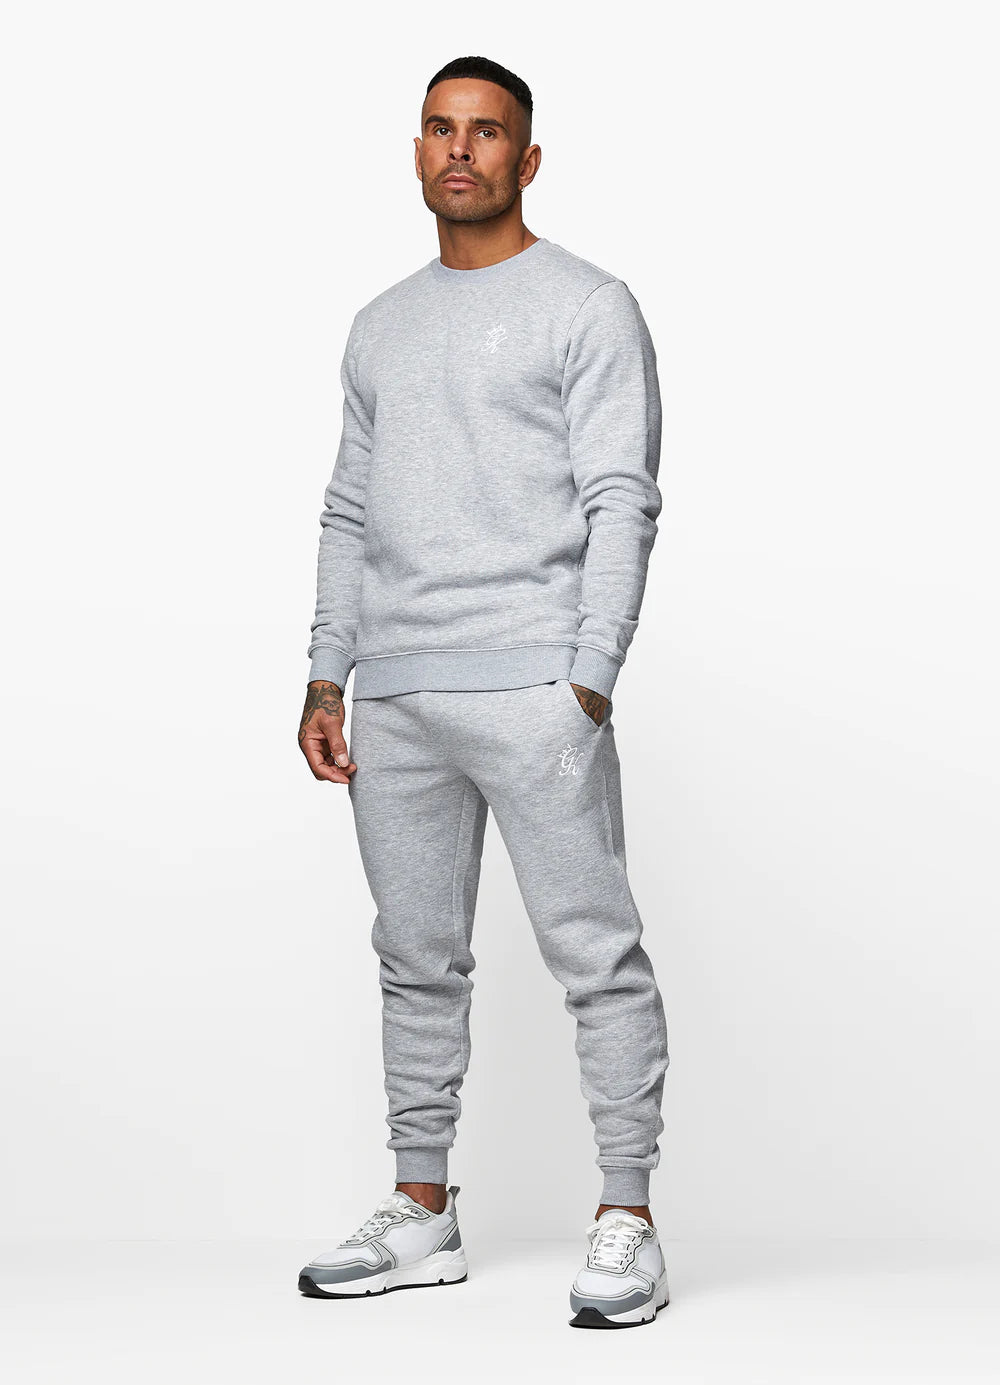 Gym King - Fundamental Sweatshirt Grey Marl